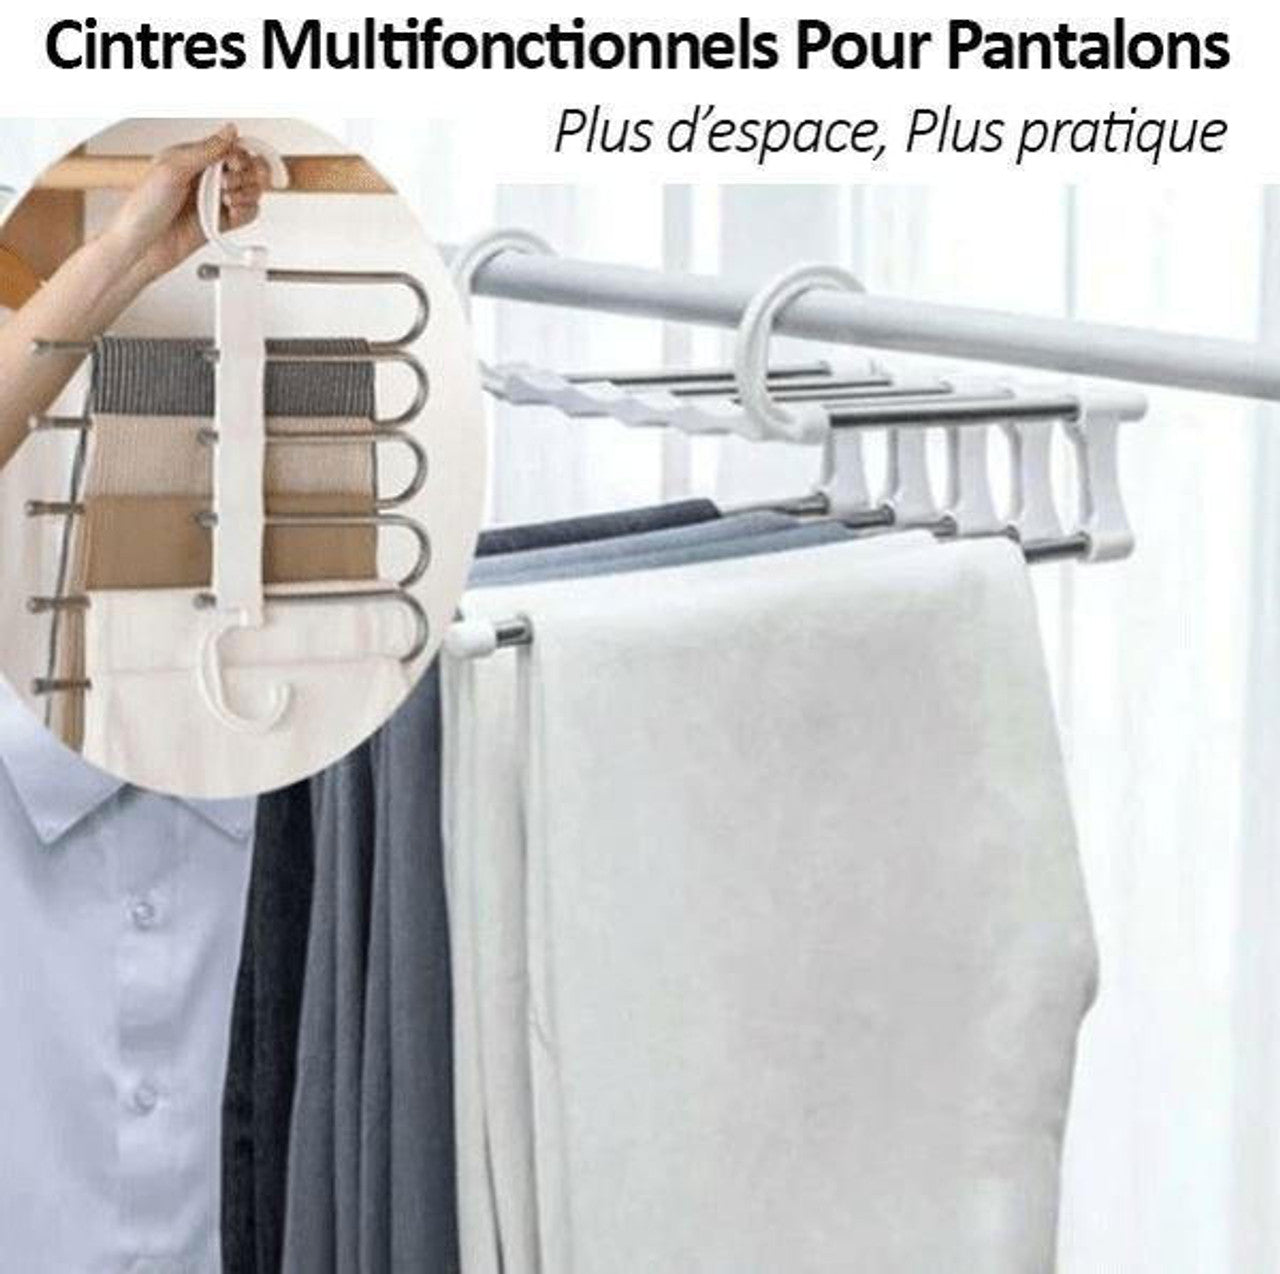 Cintres Multifonctionnels Pour Pantalons